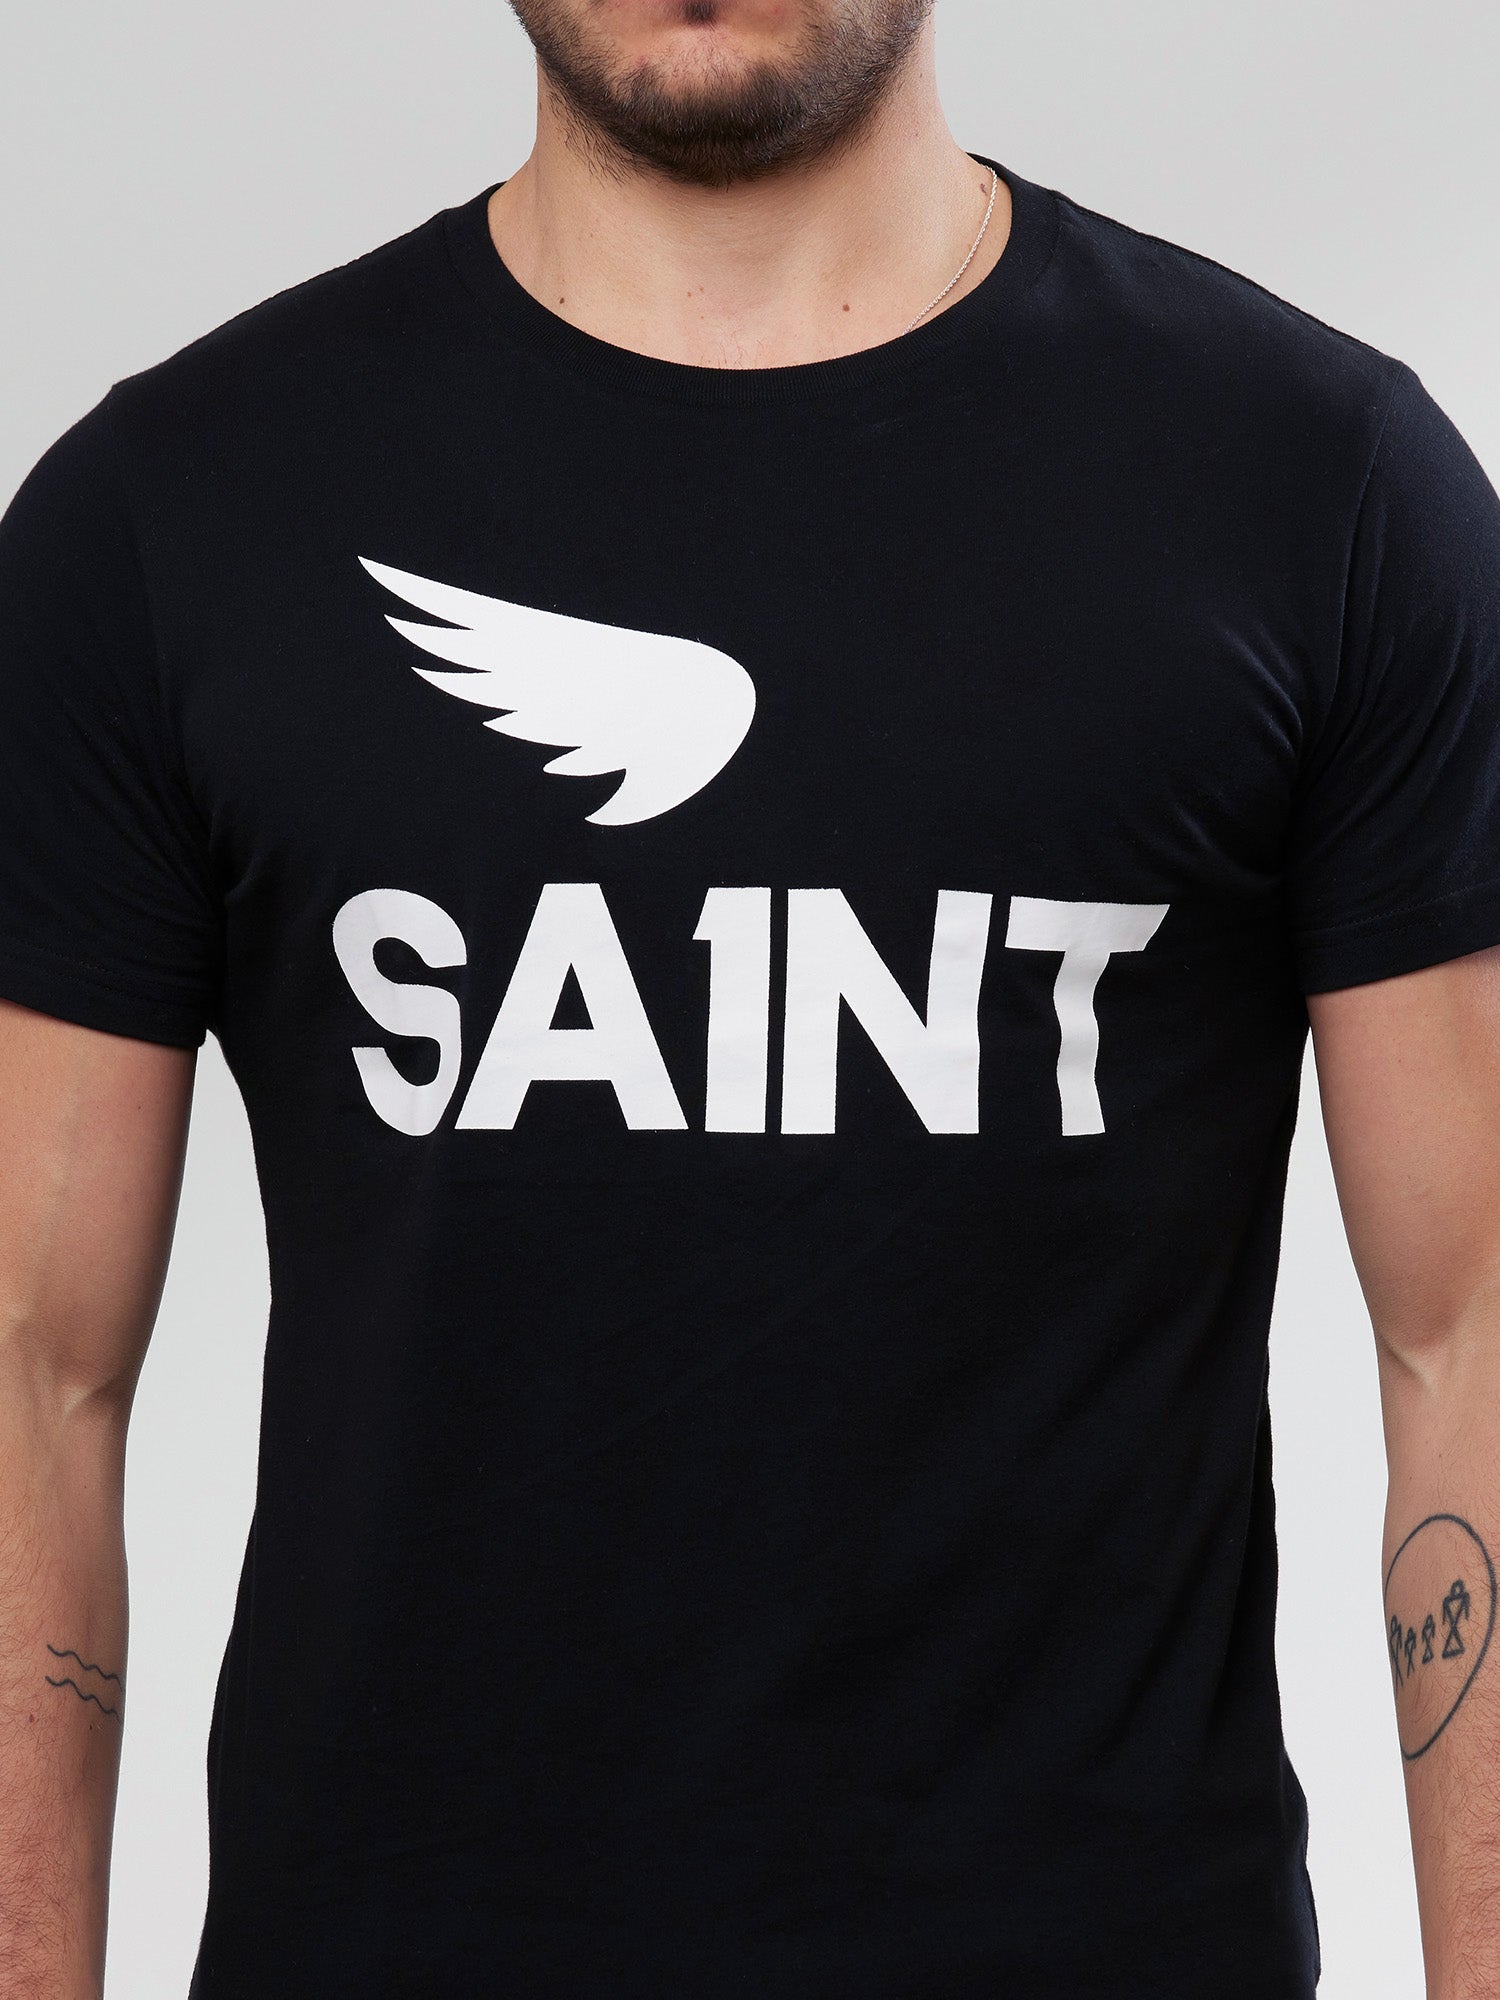 SA1NT No. 1 Tee - Black - Saint USA